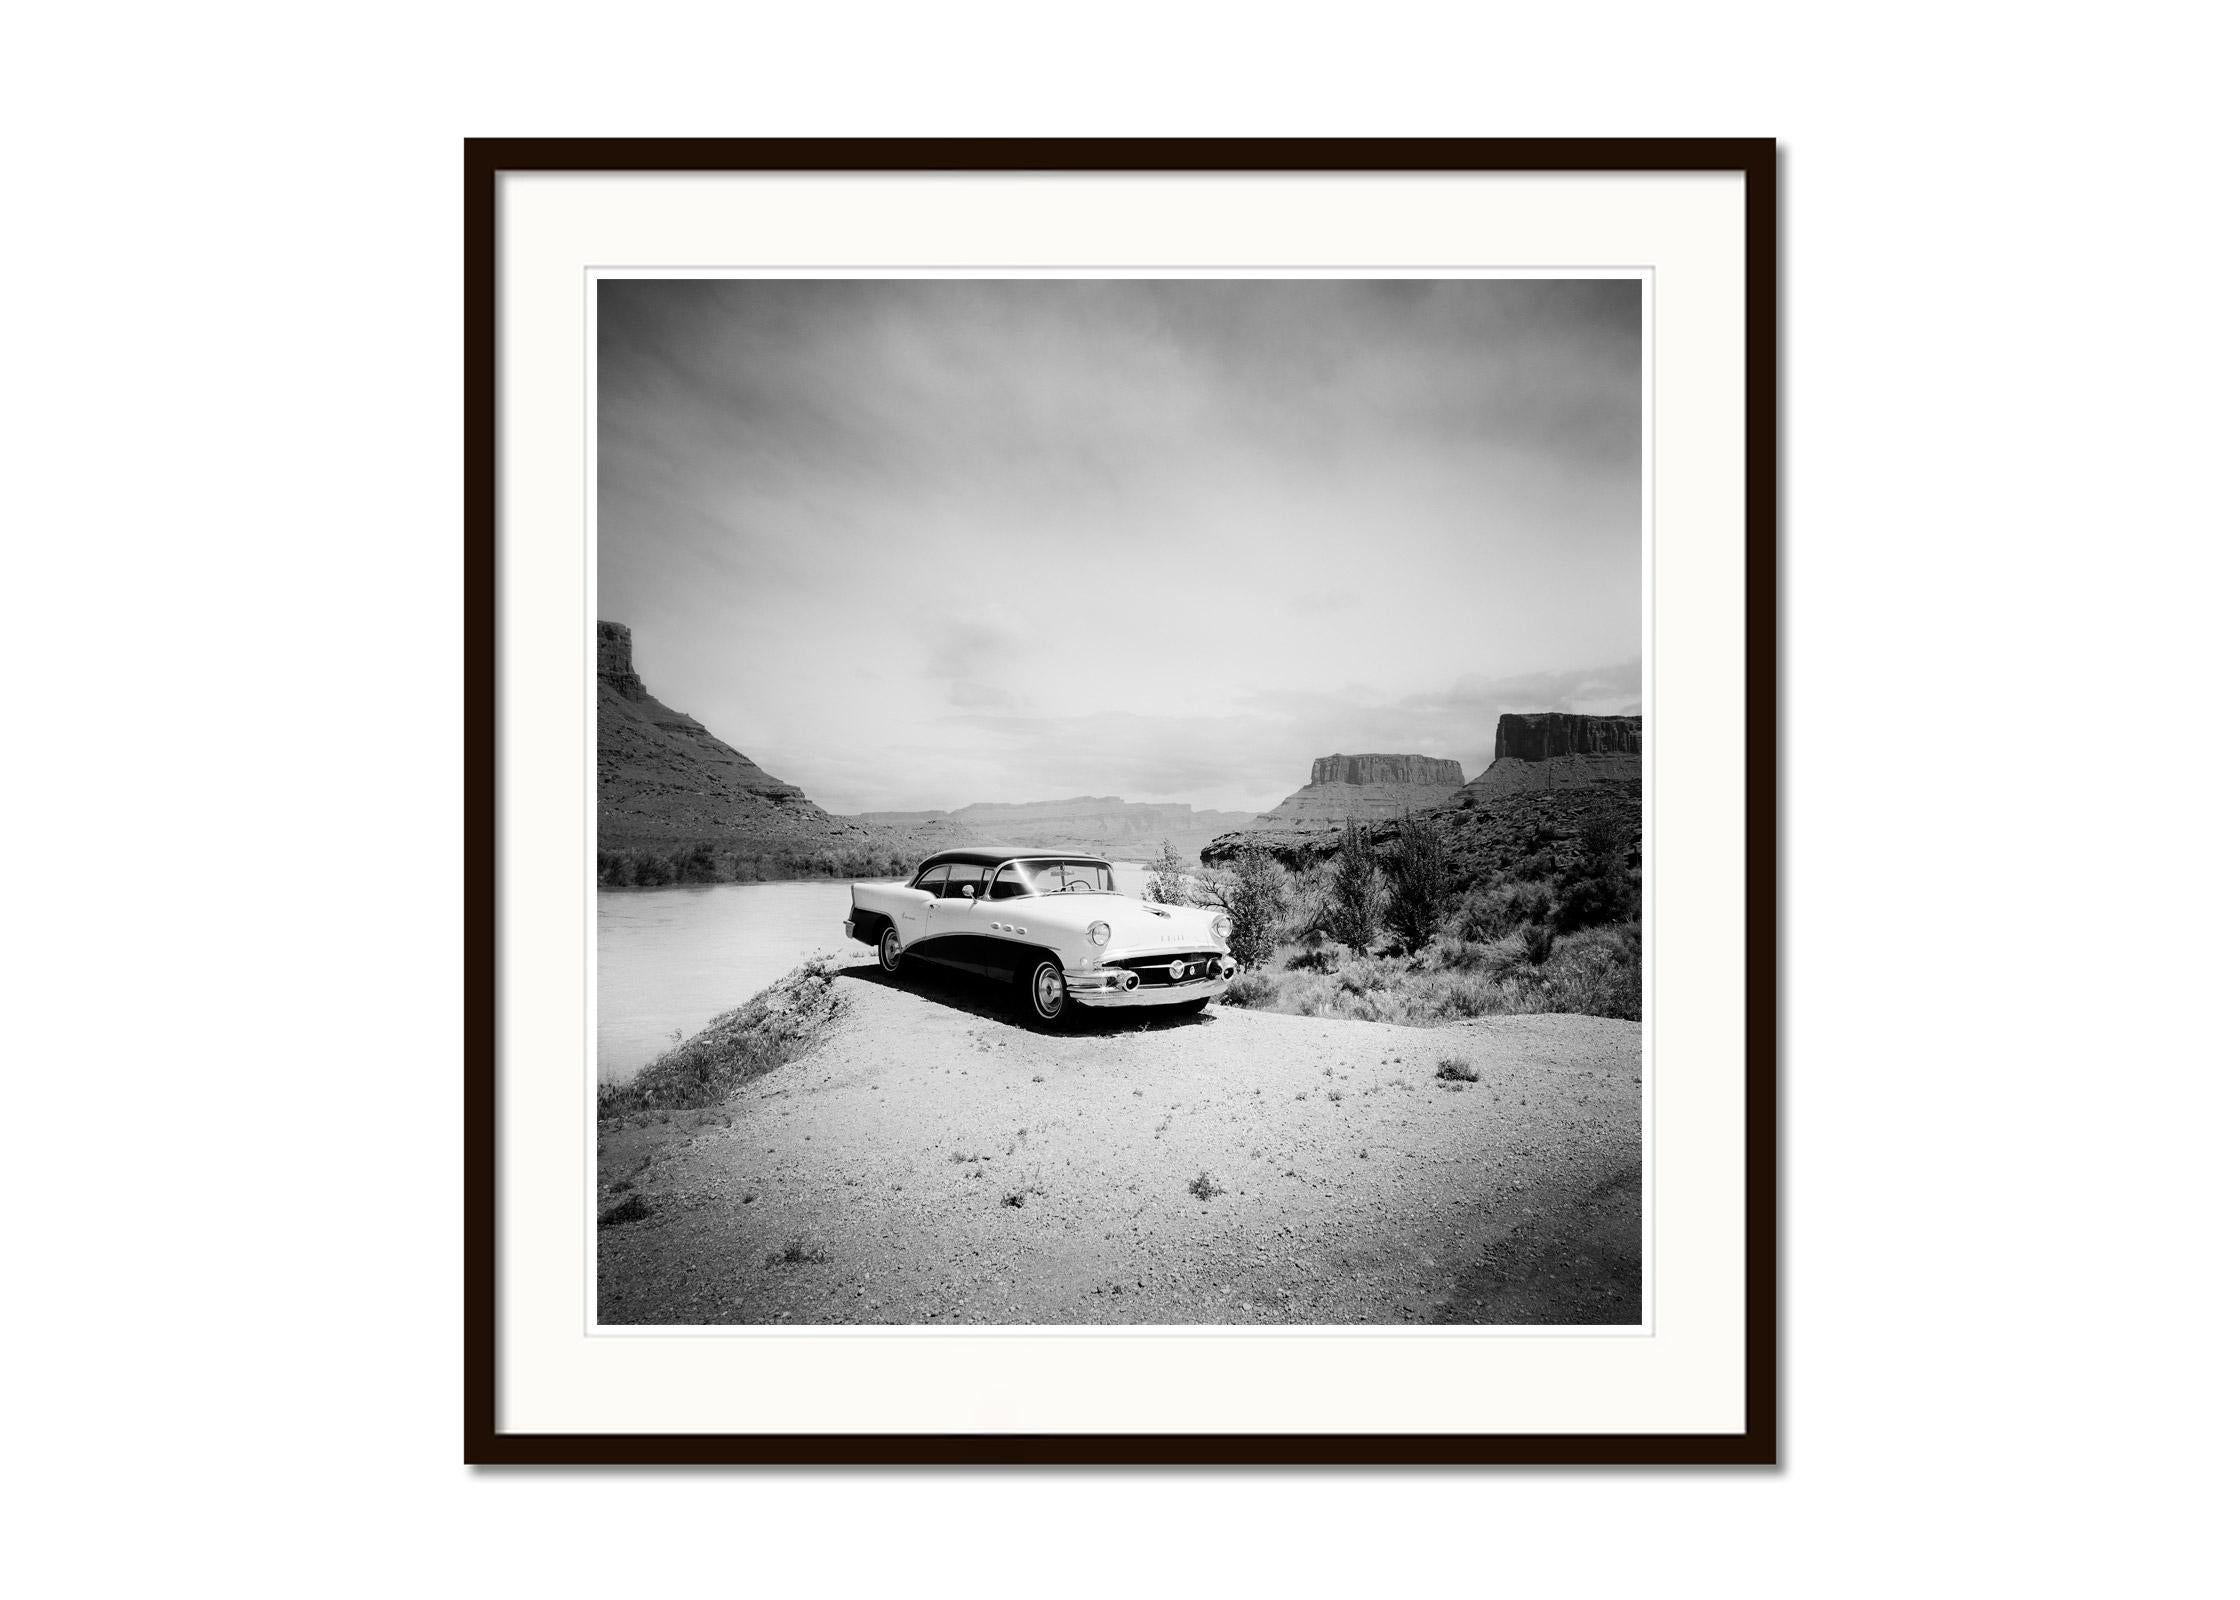 Buick 60 Century Convertible, Wüste, USA, schwarz-weiß Landschaftsfotografie (Grau), Black and White Photograph, von Gerald Berghammer